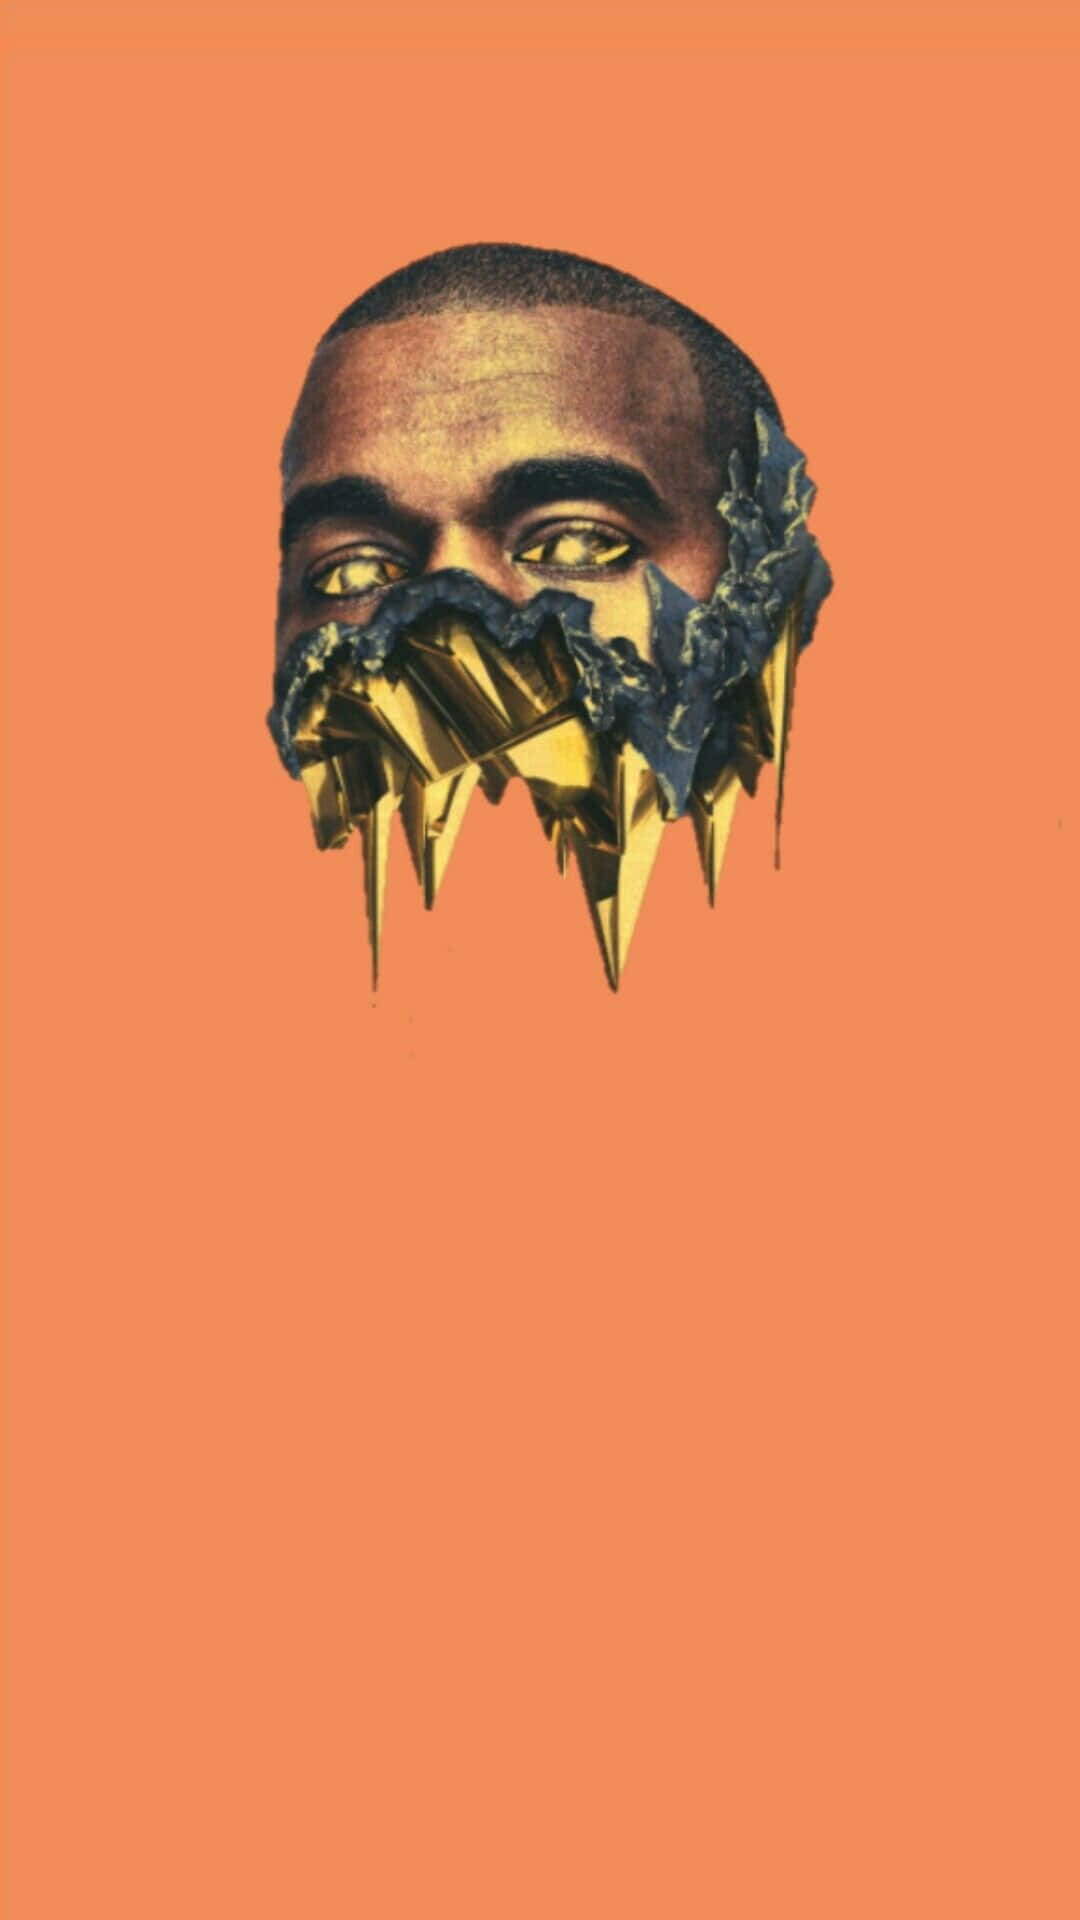 Kanyewest Tropfendes Gesicht Meine Wunderschöne Dunkle Fantasie Wallpaper